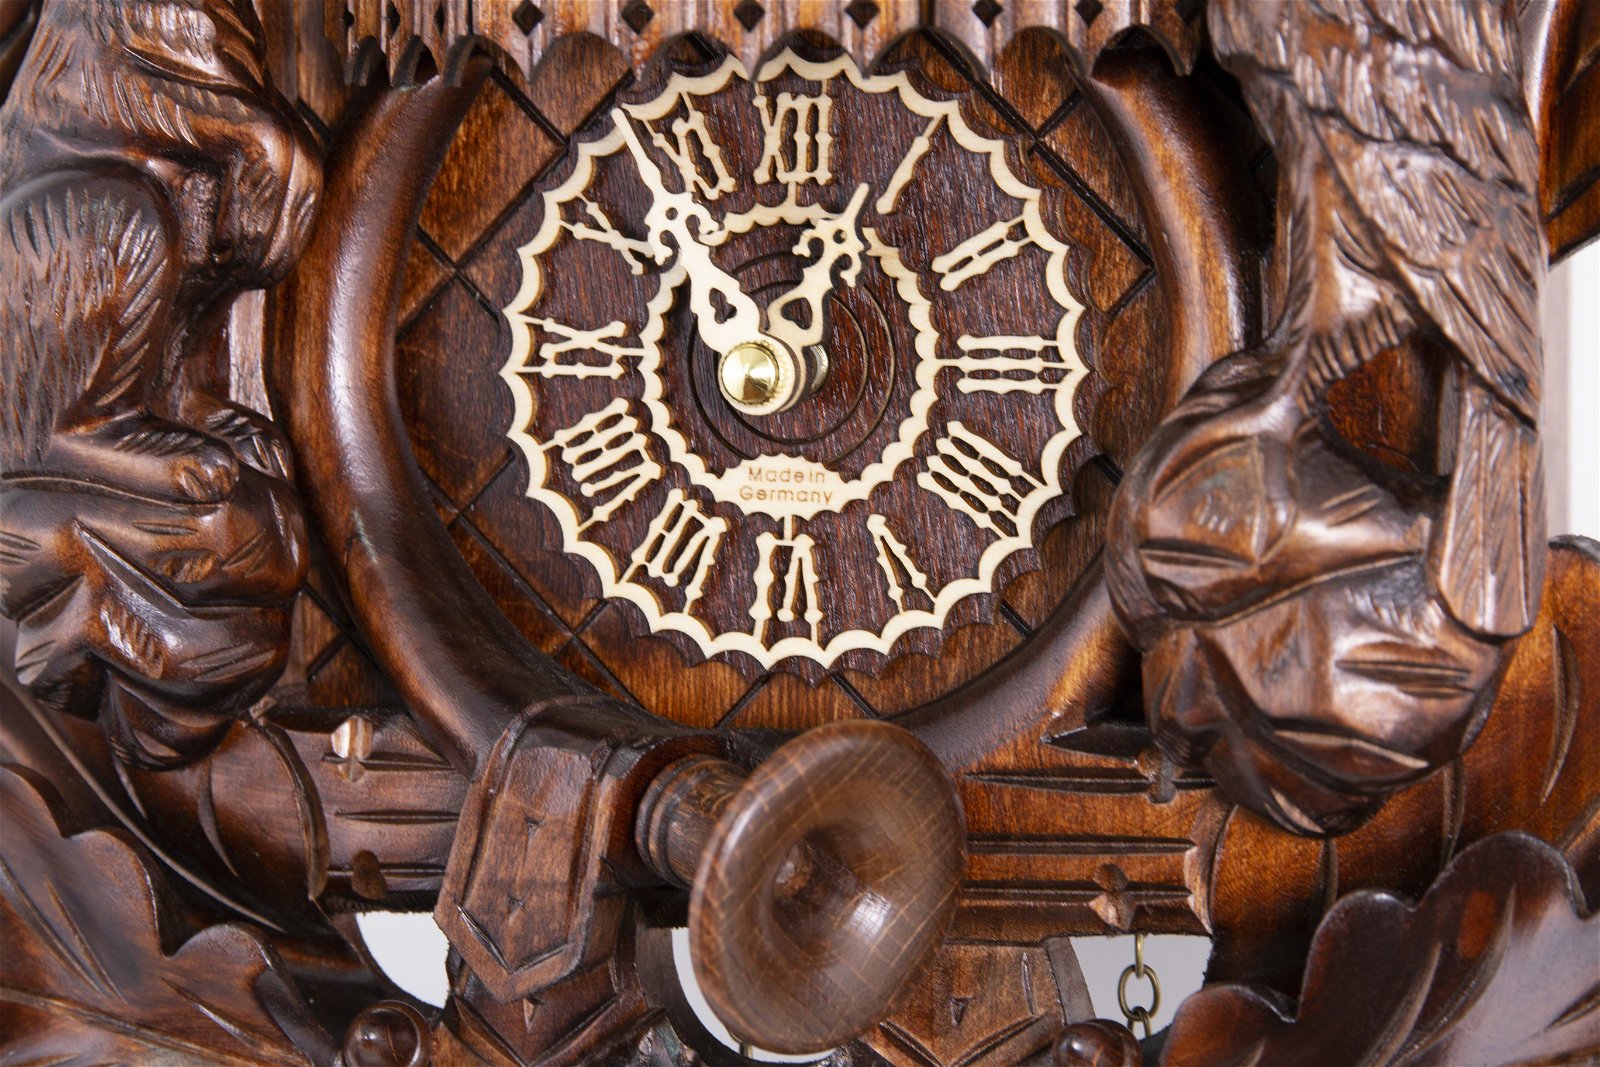 Kuckucksuhr Quarz-Uhrwerk geschnitzt 42cm von Trenkle Uhren